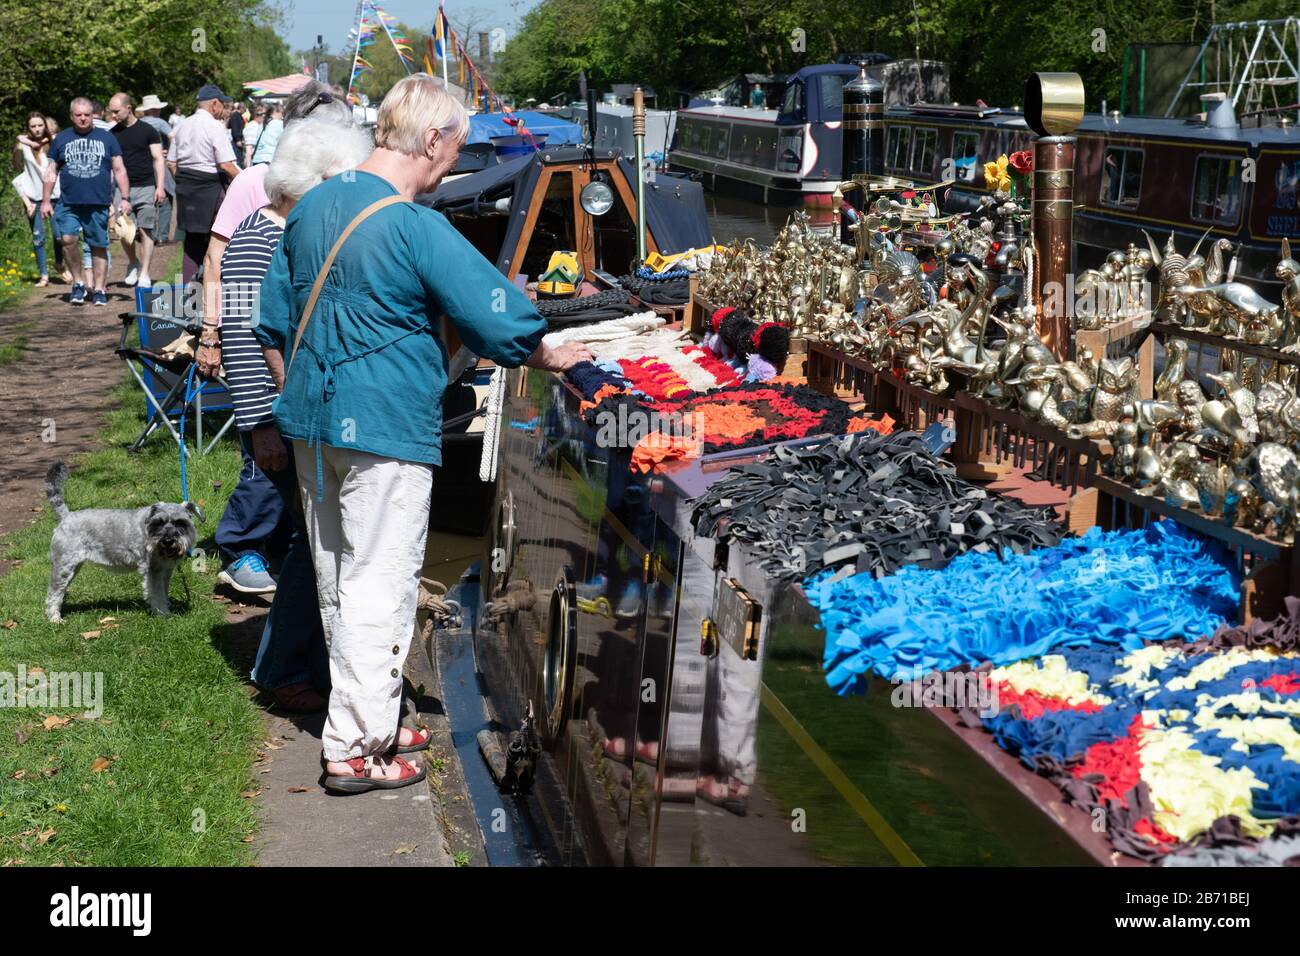 Persone che guardano vari beni in vendita da un narrowboat sui corsi d'acqua del Regno Unito durante un festival sui canali. Foto Stock